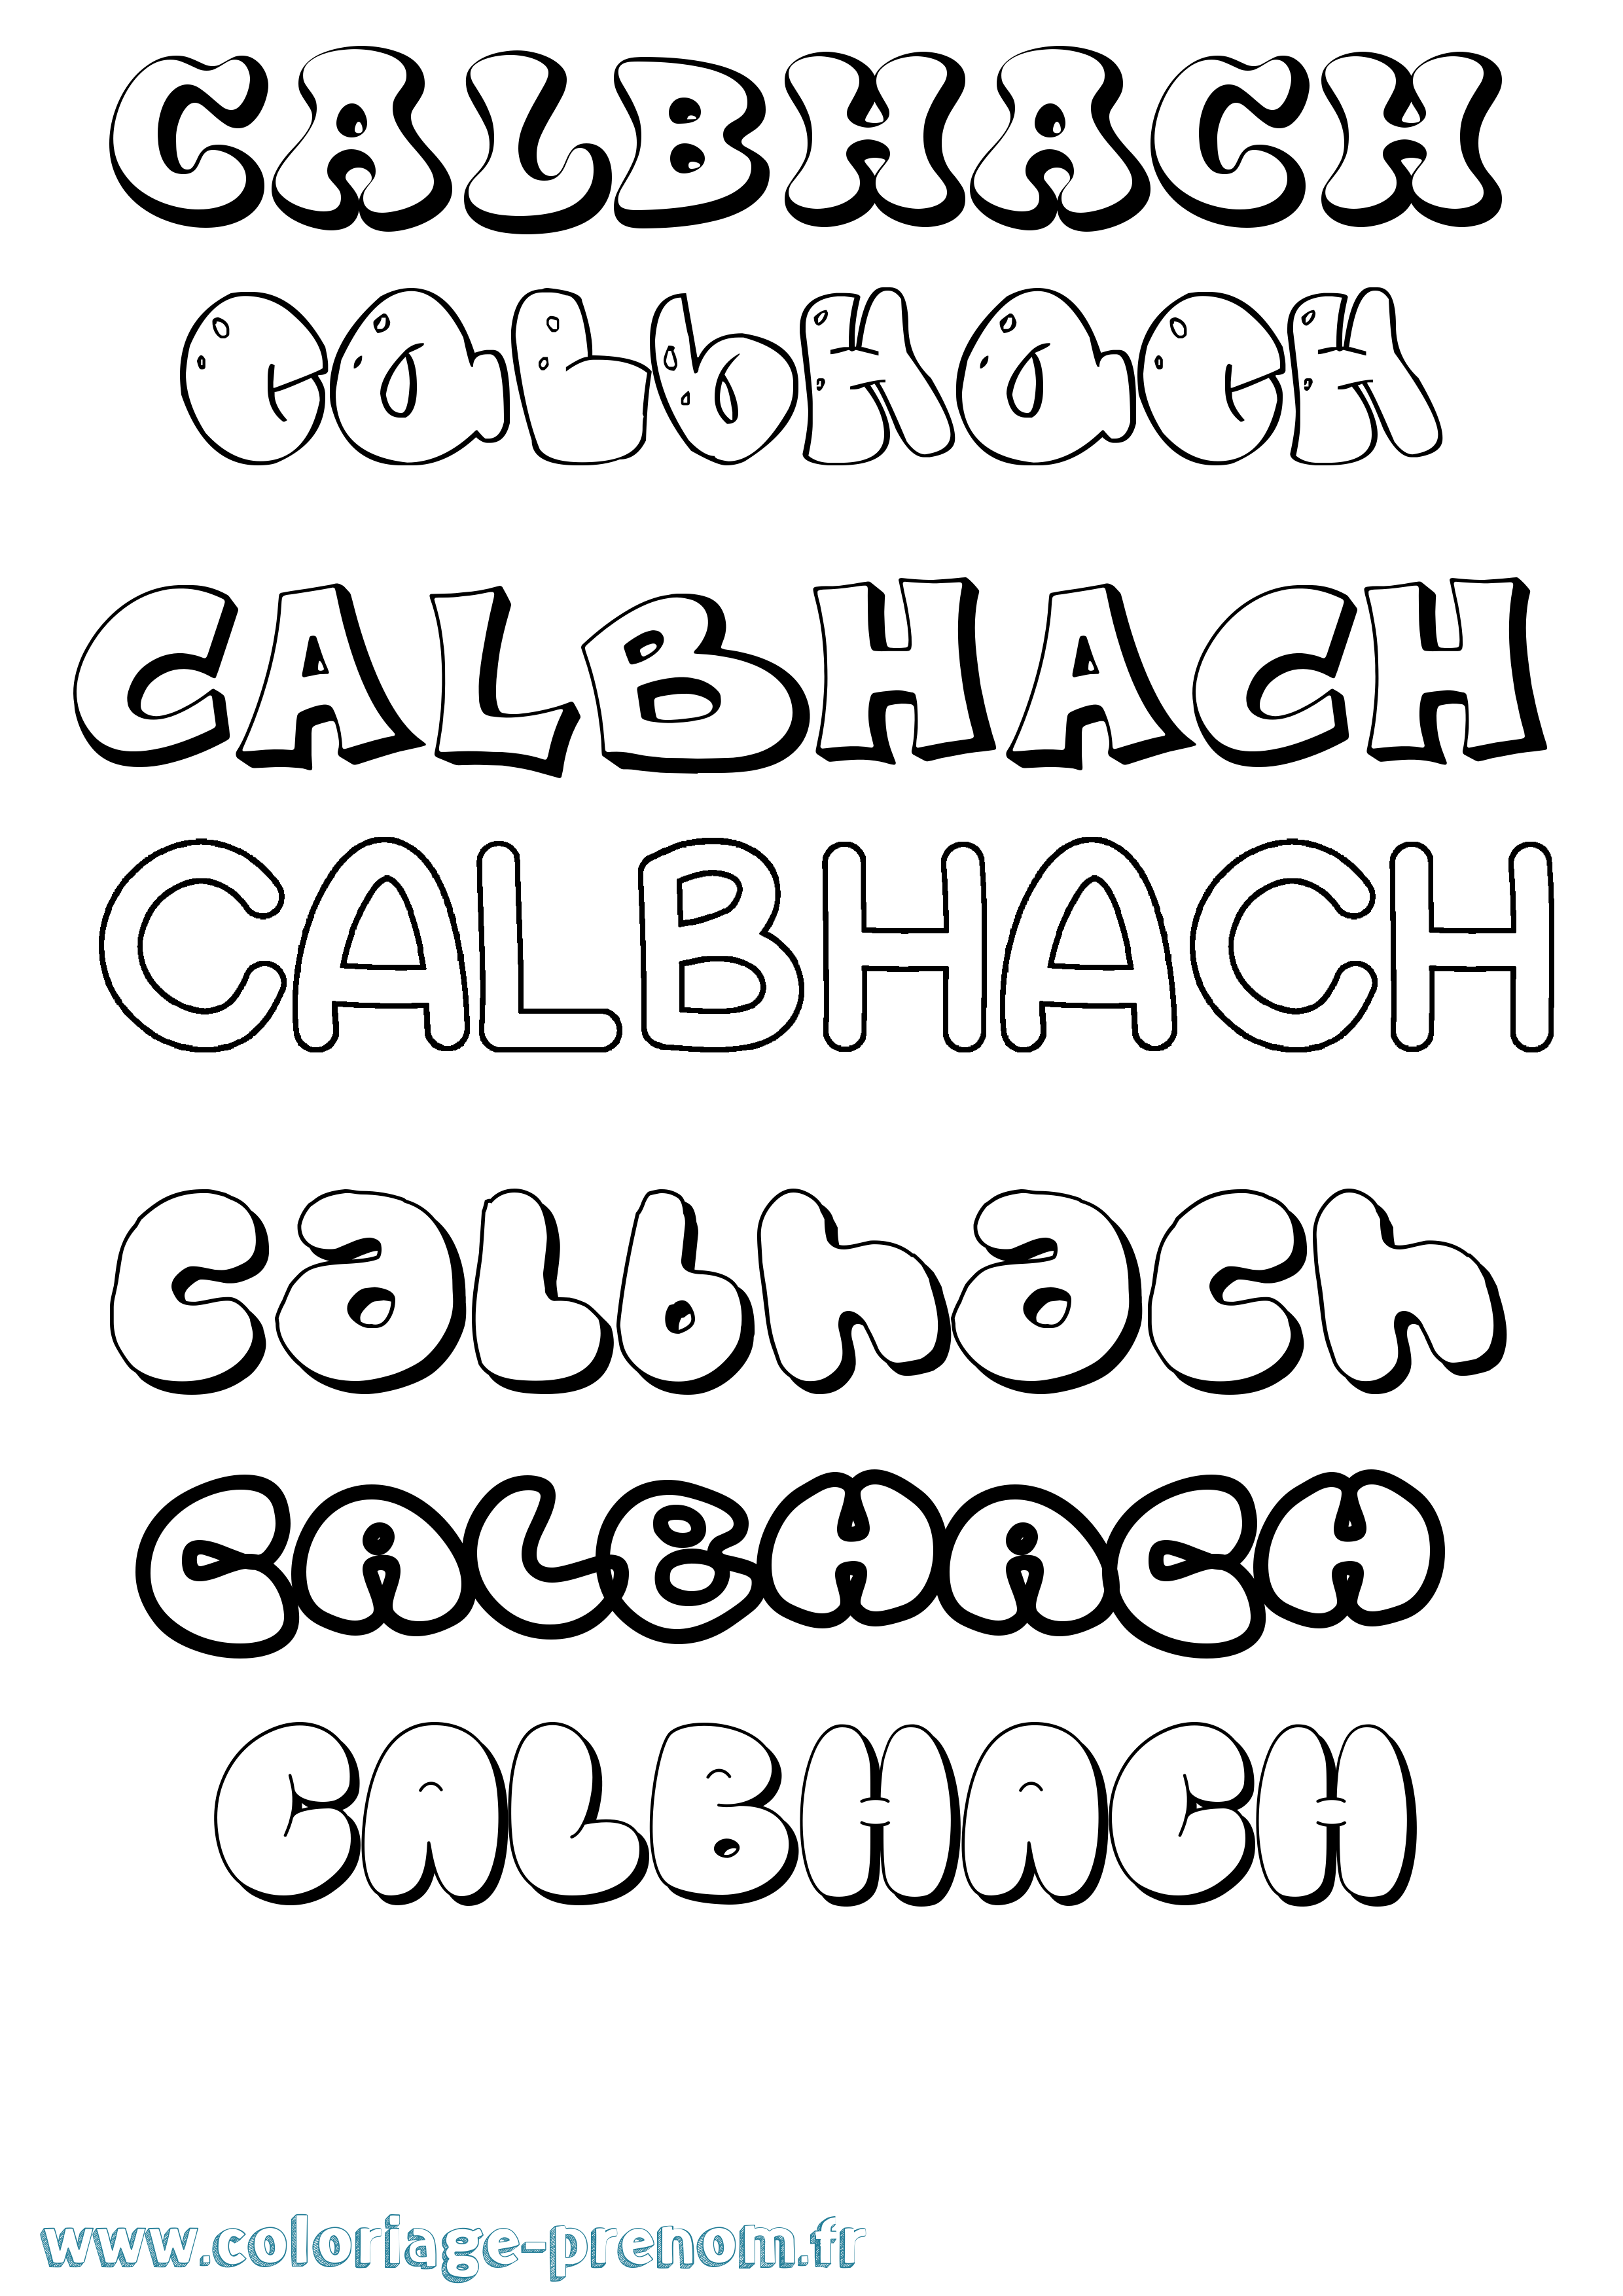 Coloriage prénom Calbhach Bubble